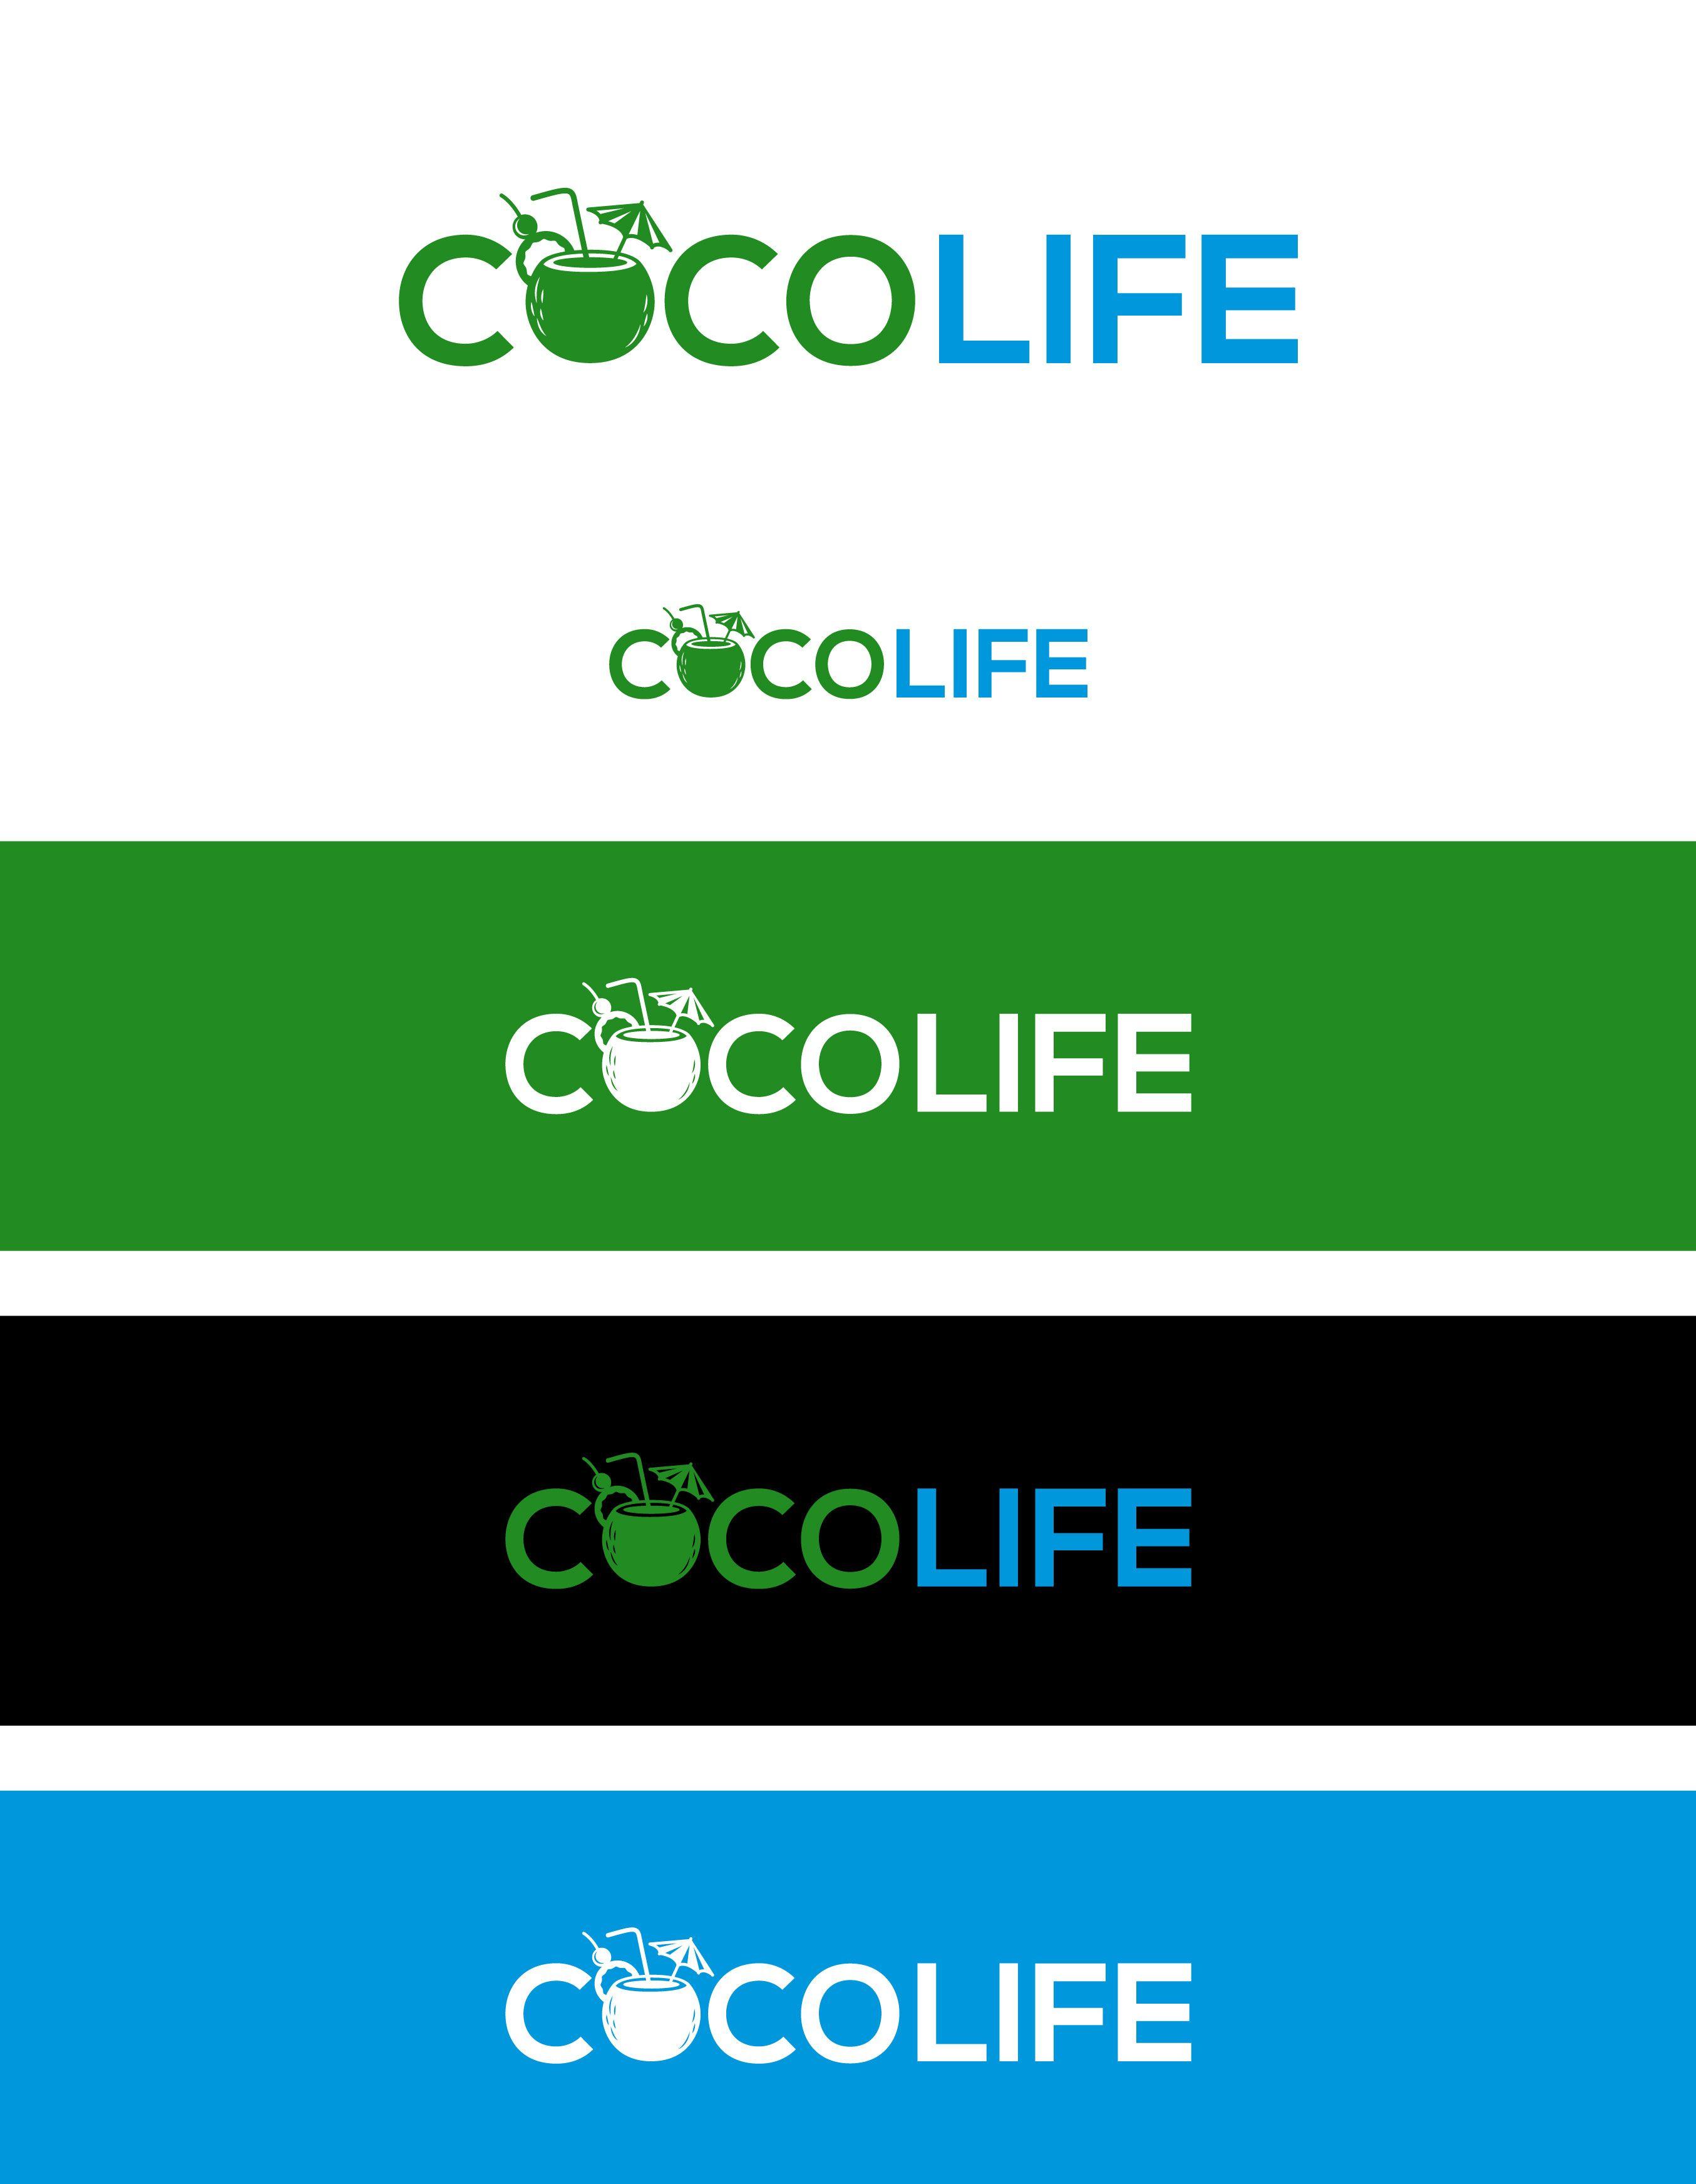 Cocolife Logo - Logo Design Contest for CocoLife